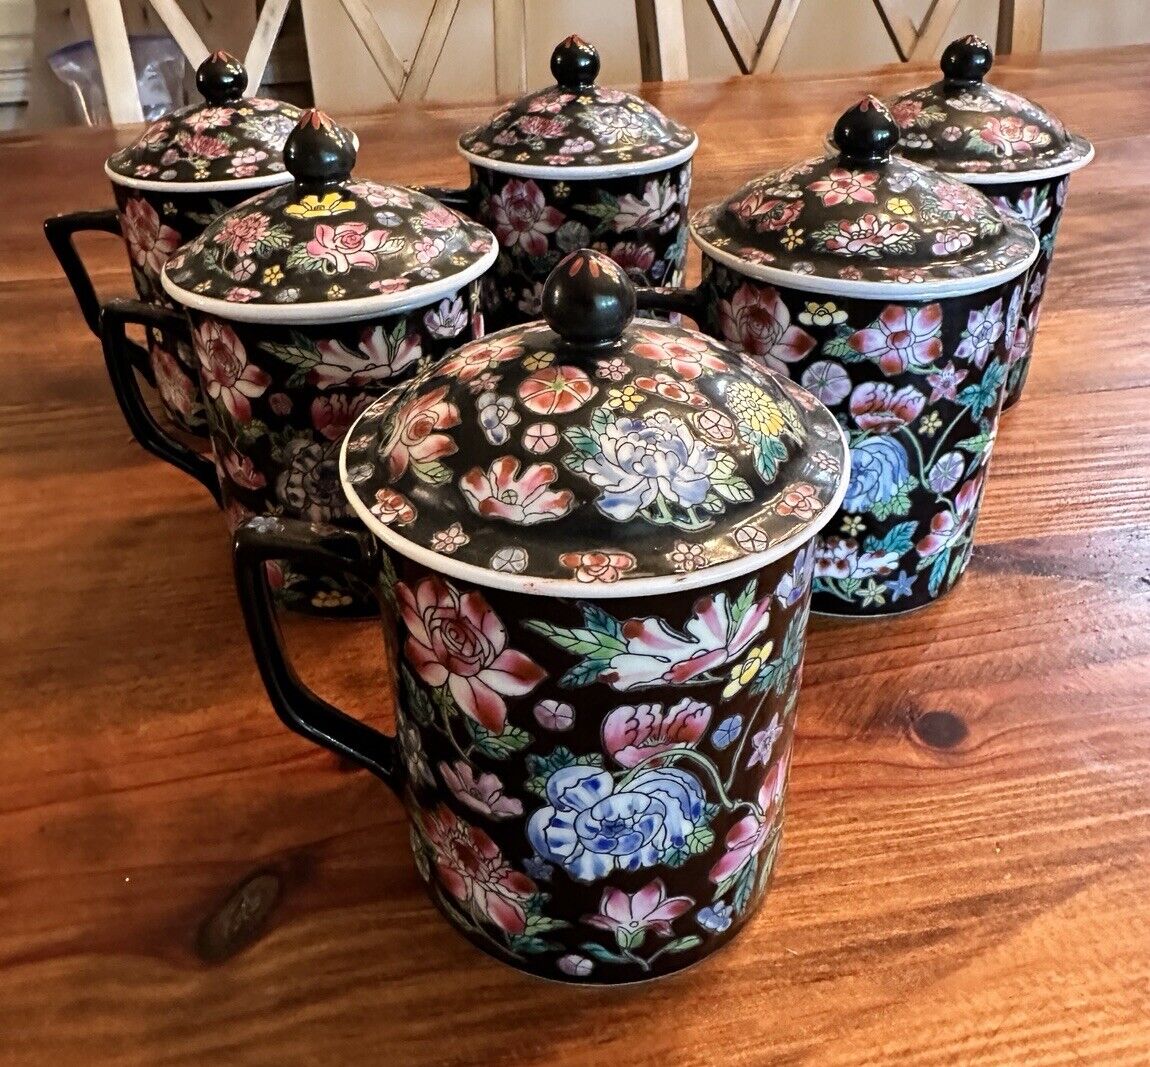 Chinese China Floral Cloisonne Tea Cup Mug with Lid Porcelain Ceramic Signed VTG